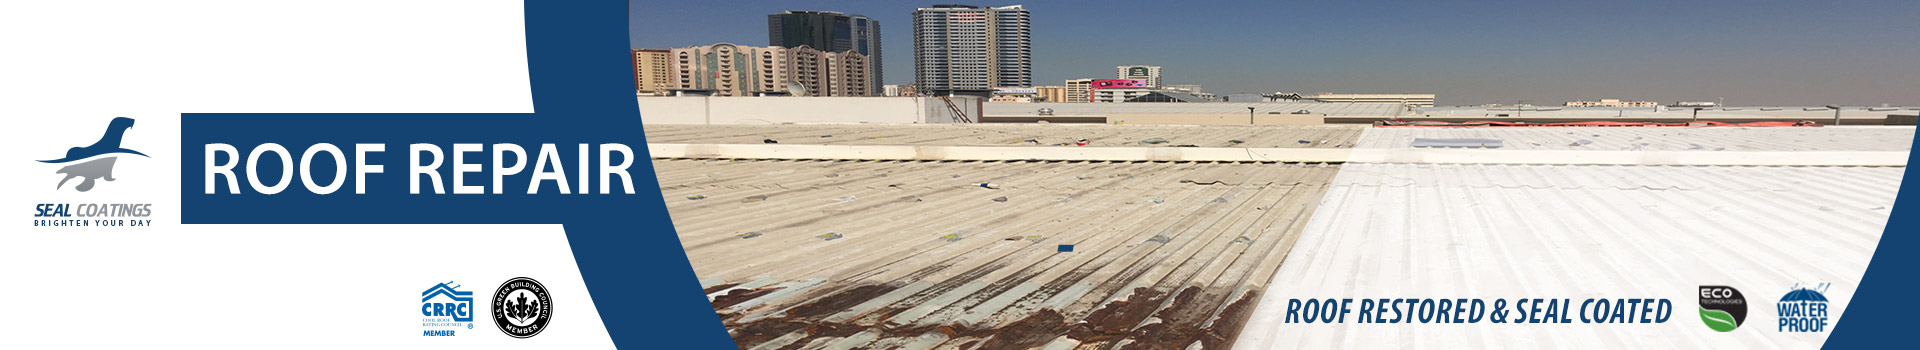 roof repair waterproofing concrete metal coatings